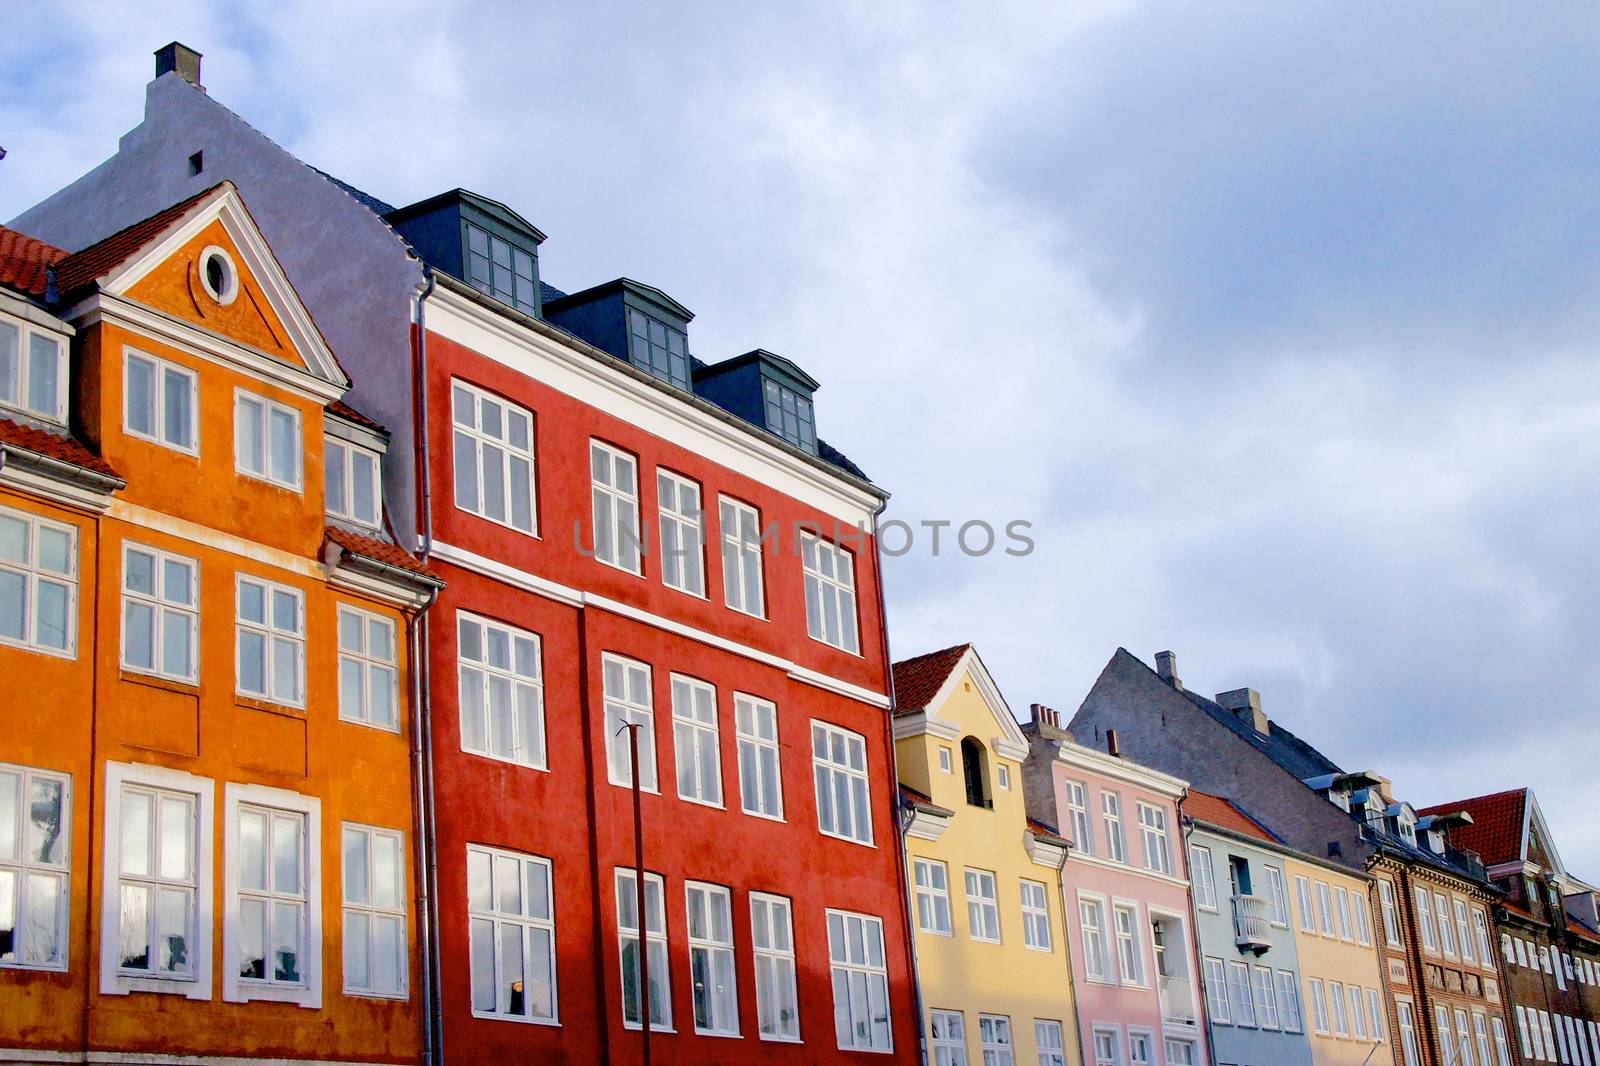 Houses in Copenhagen by zhekos